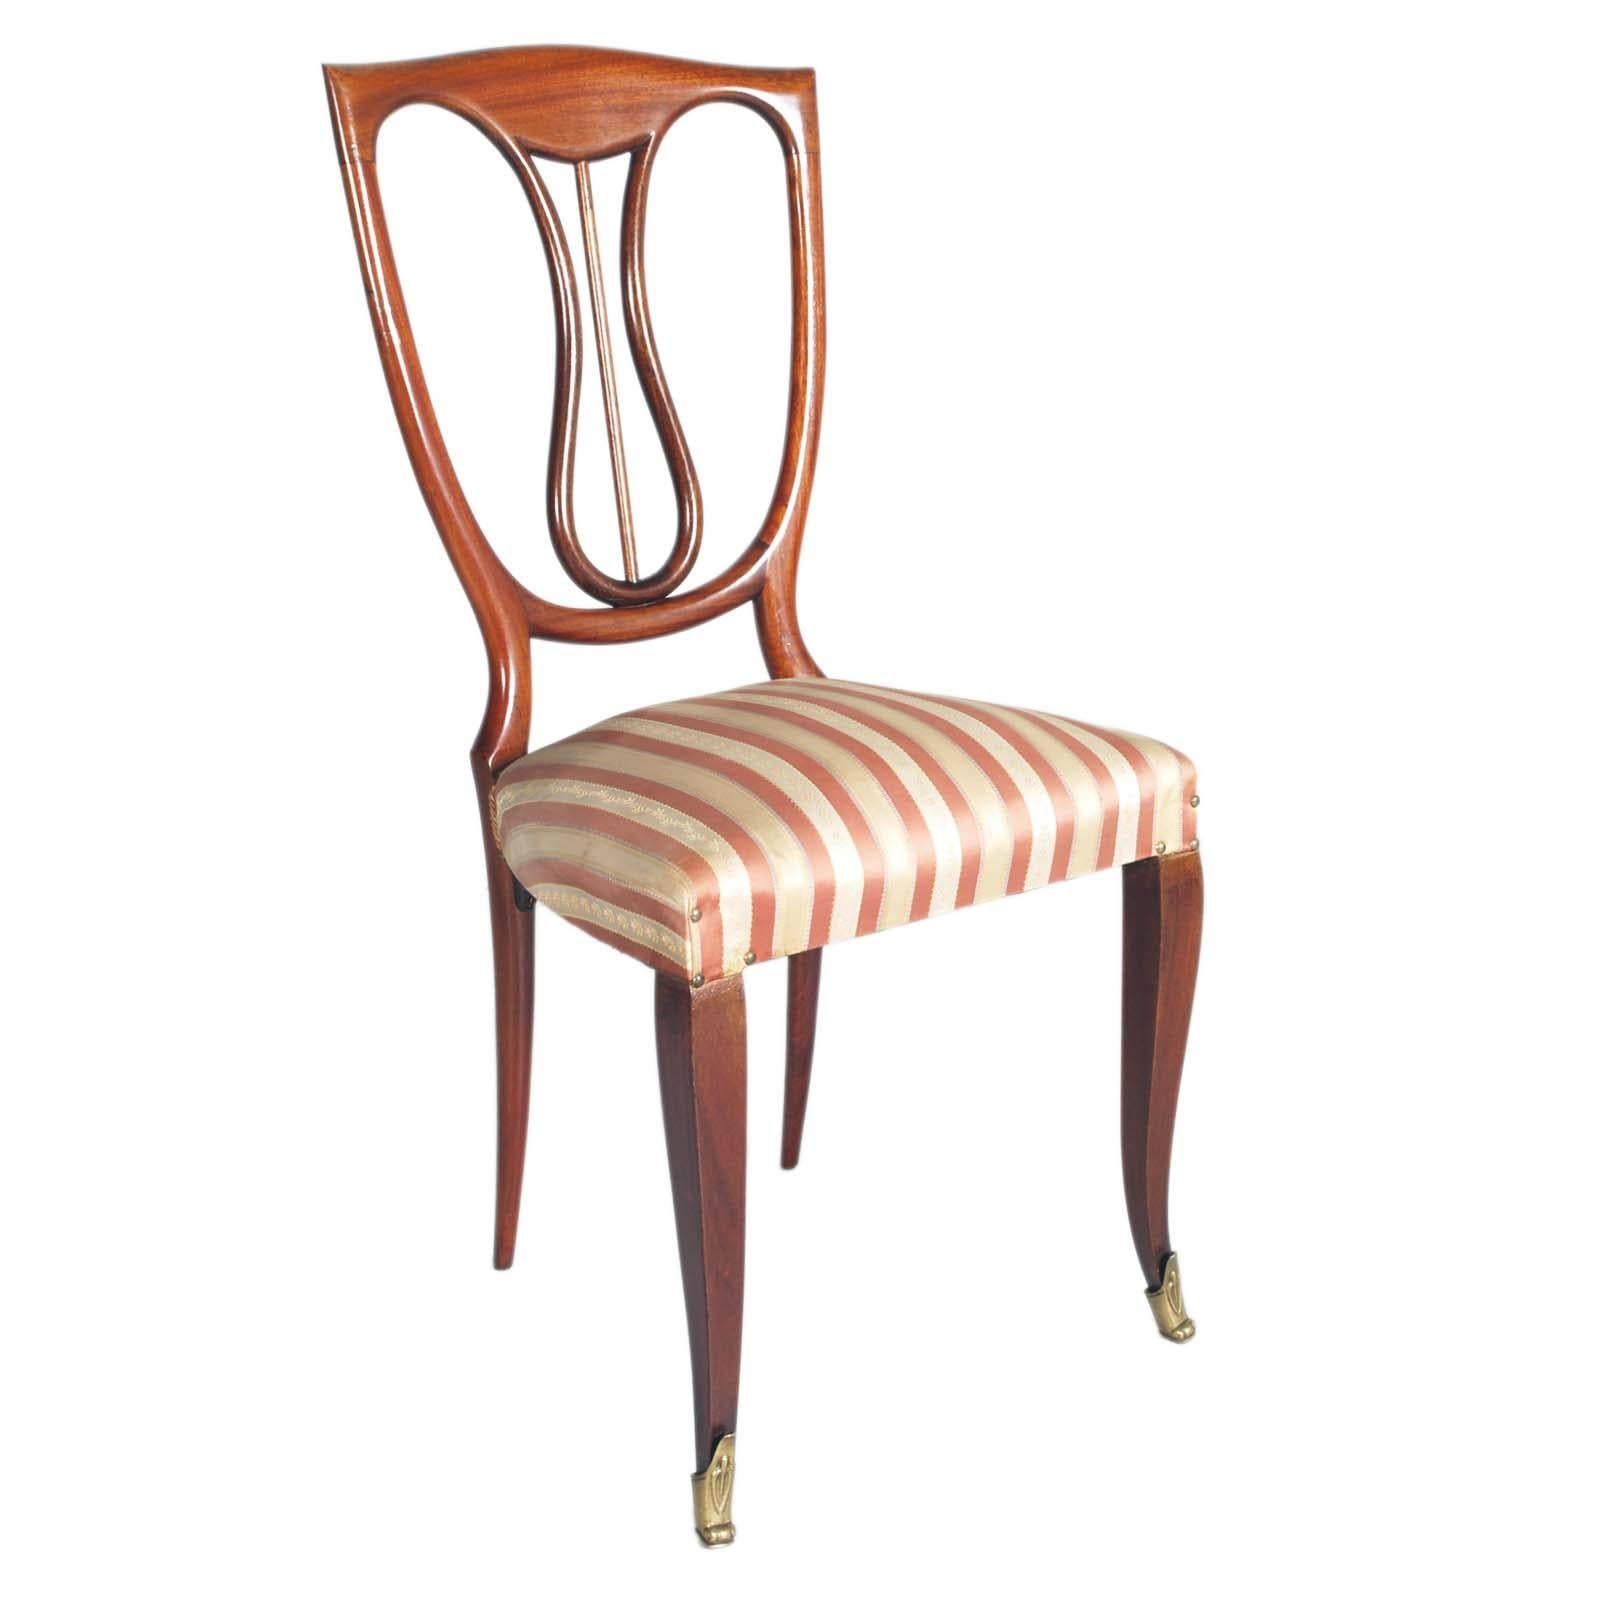 Elegante paire de chaises de salon des années 1940 en acajou laqué, Melchiorre Bega attribué, avec assise à ressorts ; dossier néoclassique stylisé LIRA. Pieds en laiton gaufré et doré. 
Chaises de grande image dans le style néoclassique